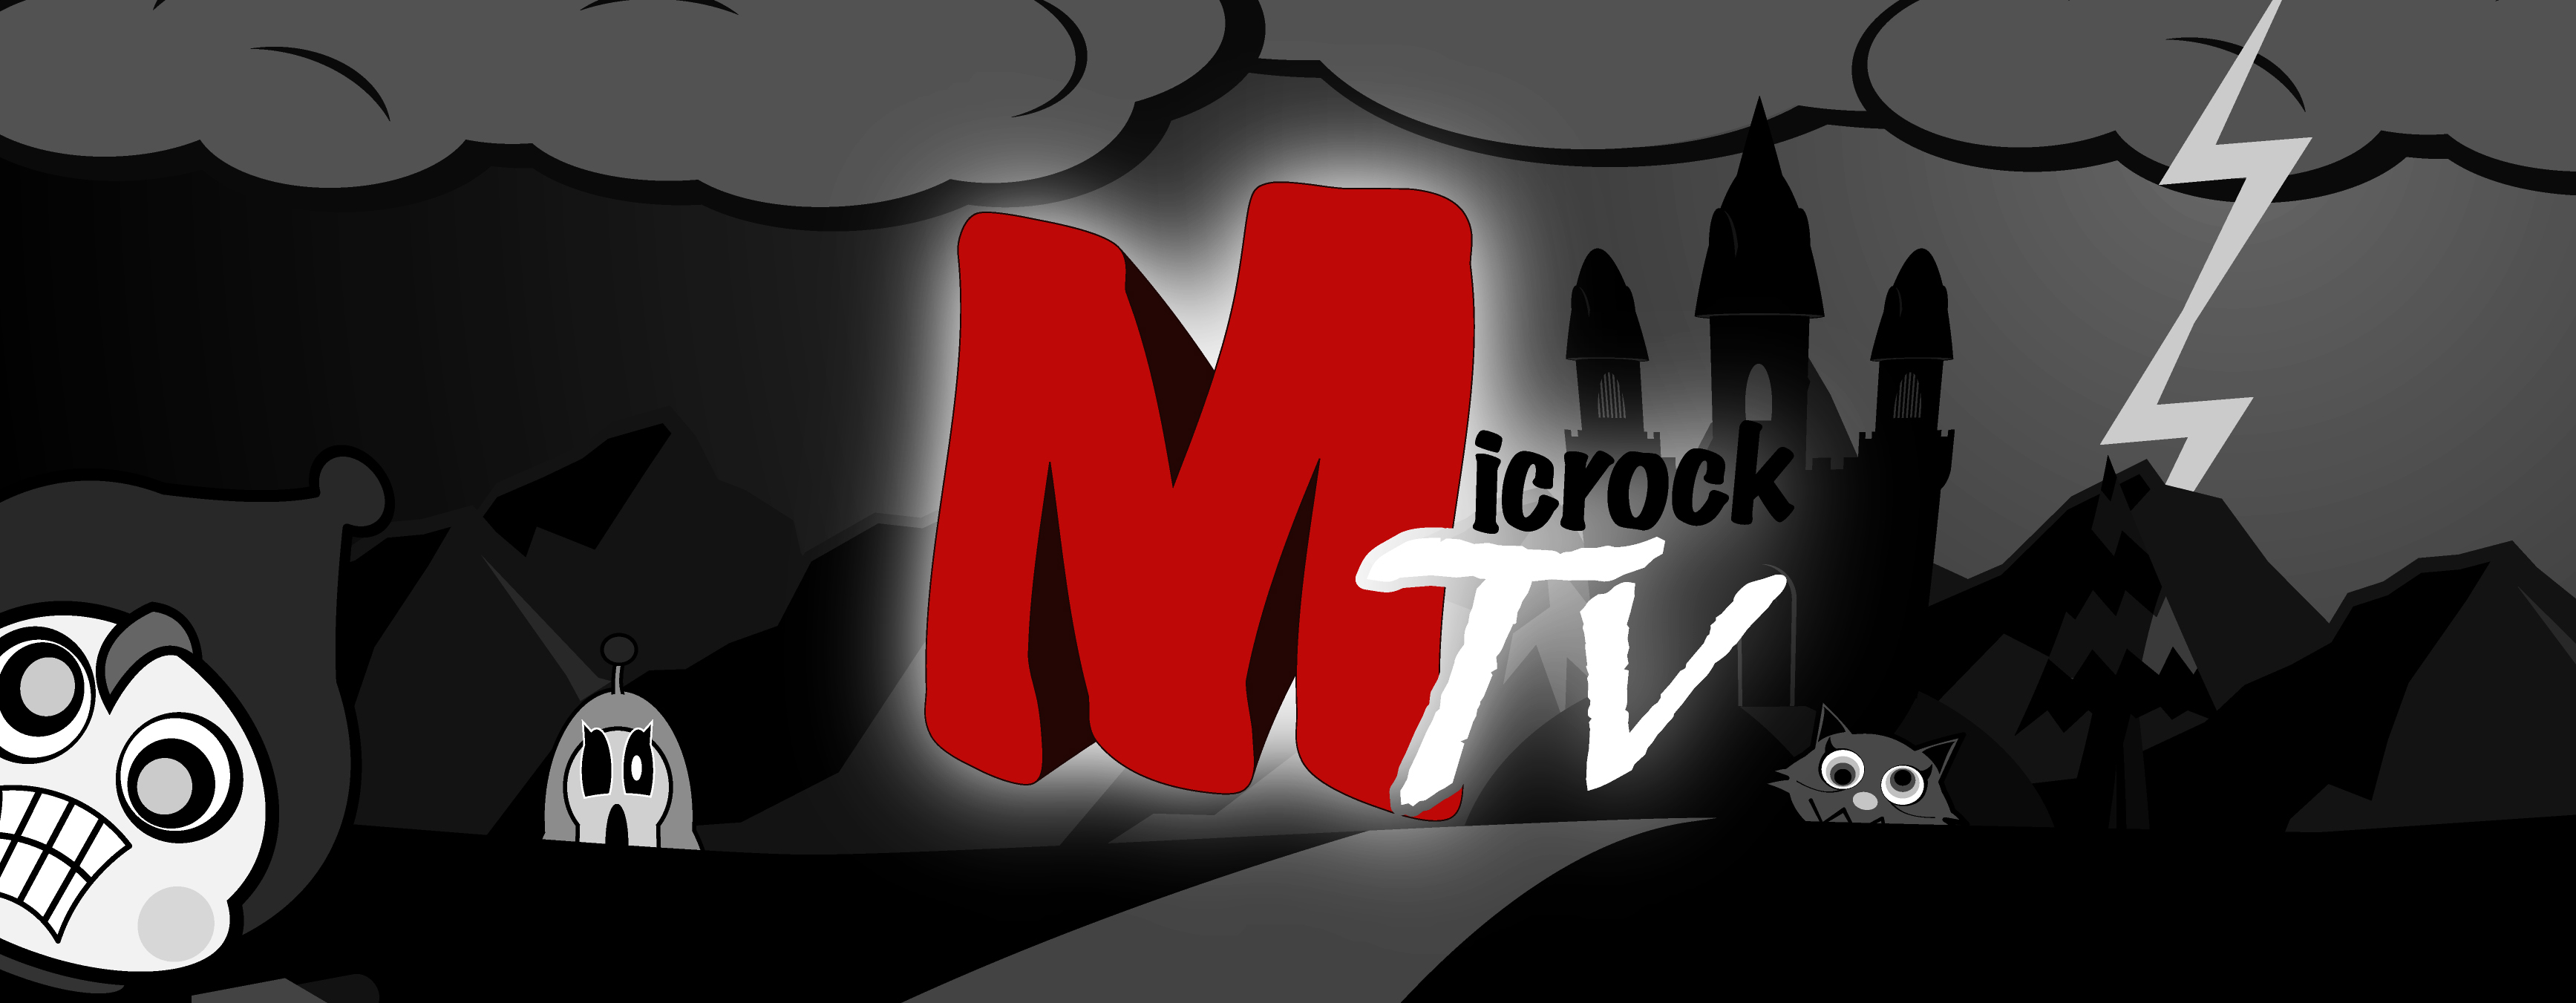 microck_tv.jpg